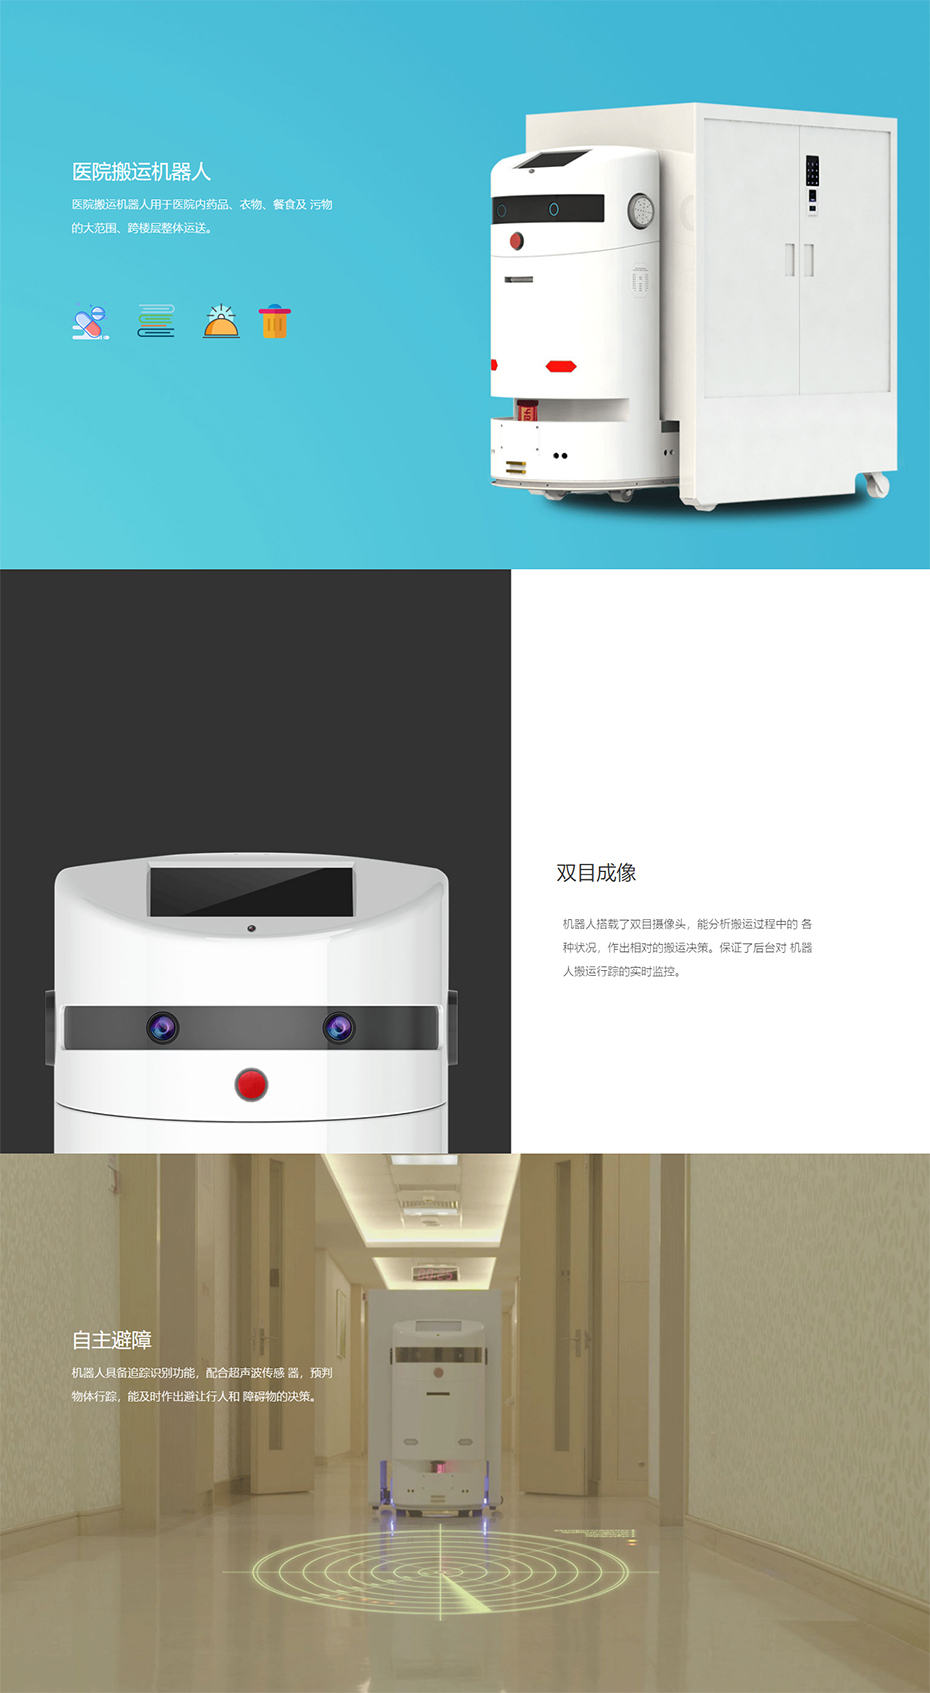 医院智能配送机器人-广州赛特智能科技有限公司.jpg